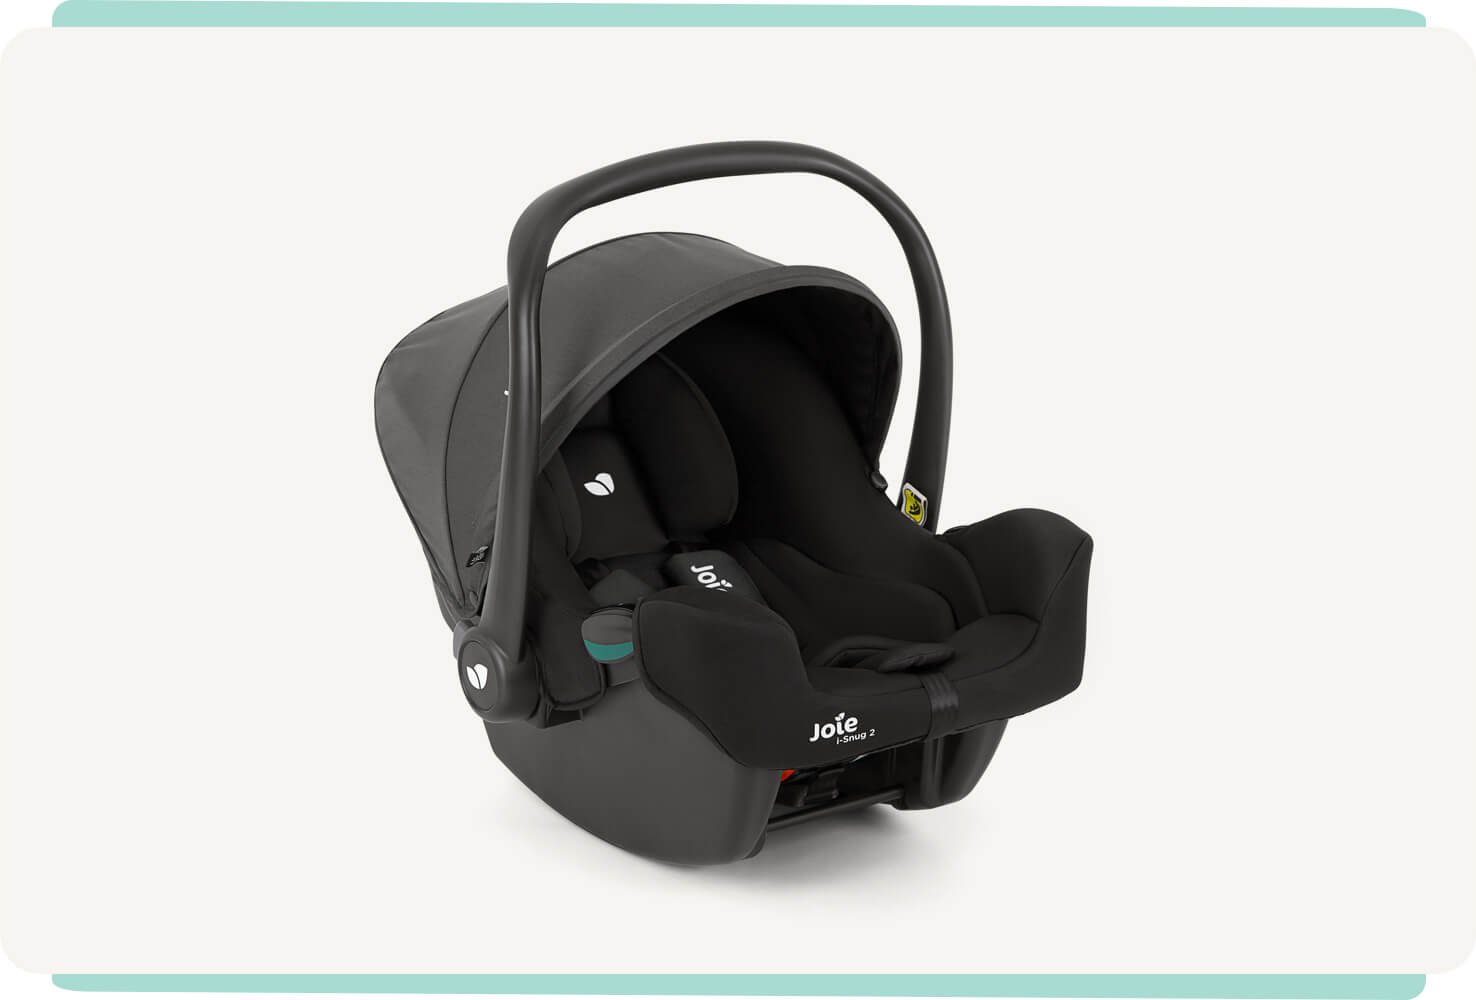 Siège auto pour bébé Joie I-snug 2, coloris noir deux tons, avec pare-soleil et poignée relevés en position d’angle droit.